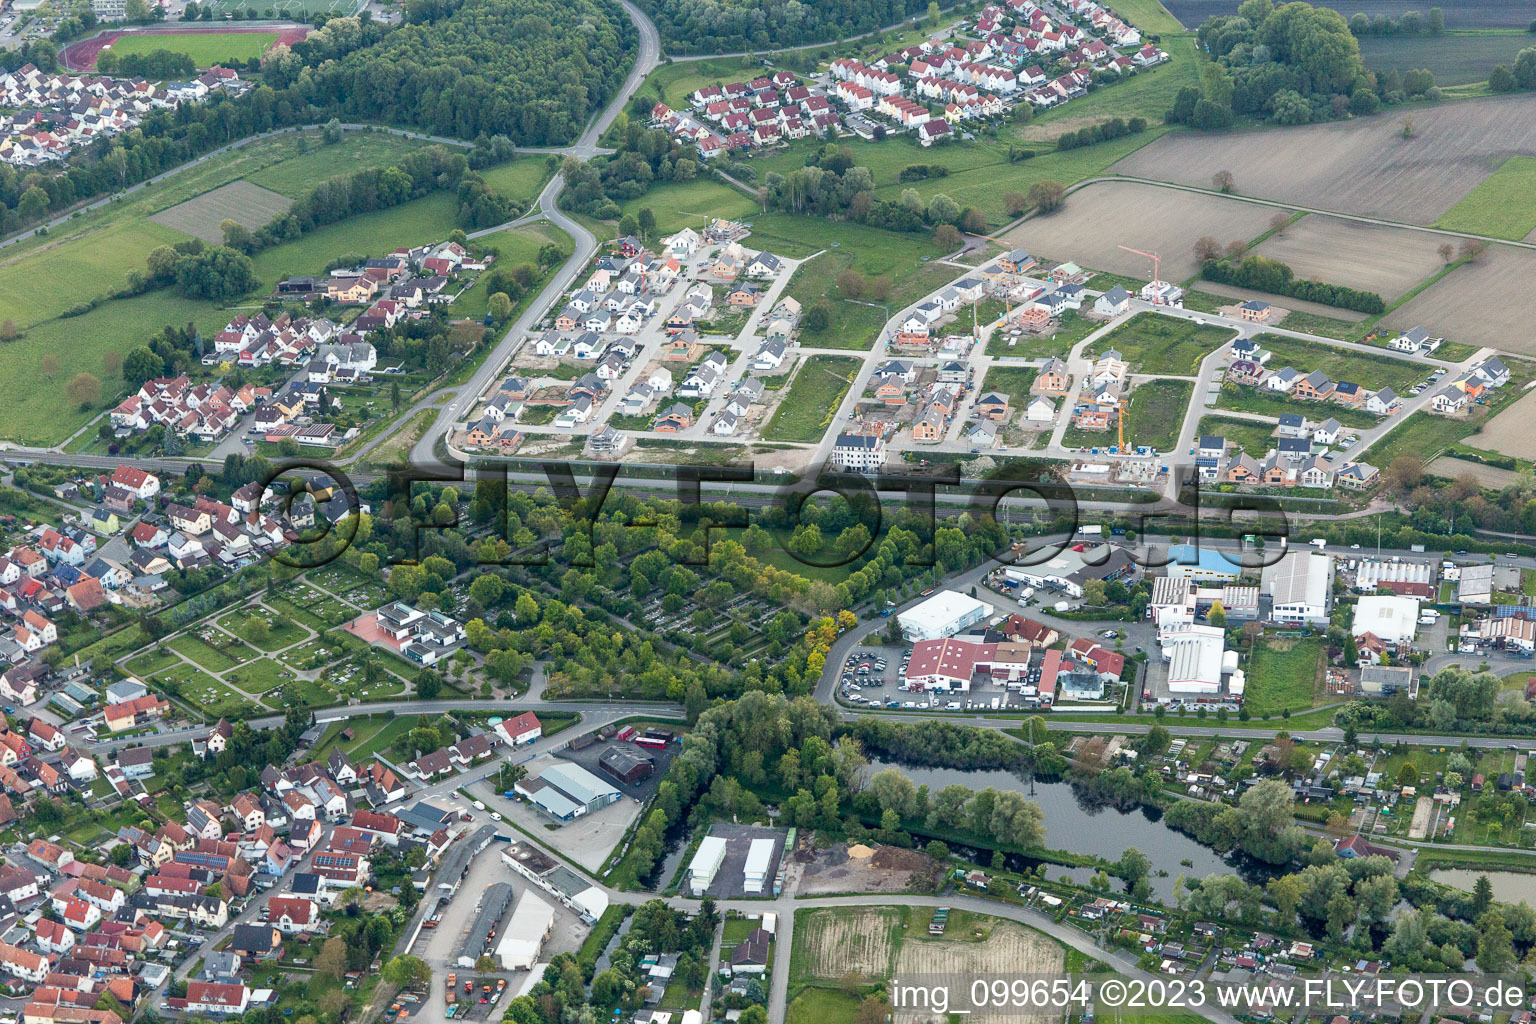 Wörth am Rhein im Bundesland Rheinland-Pfalz, Deutschland von oben gesehen